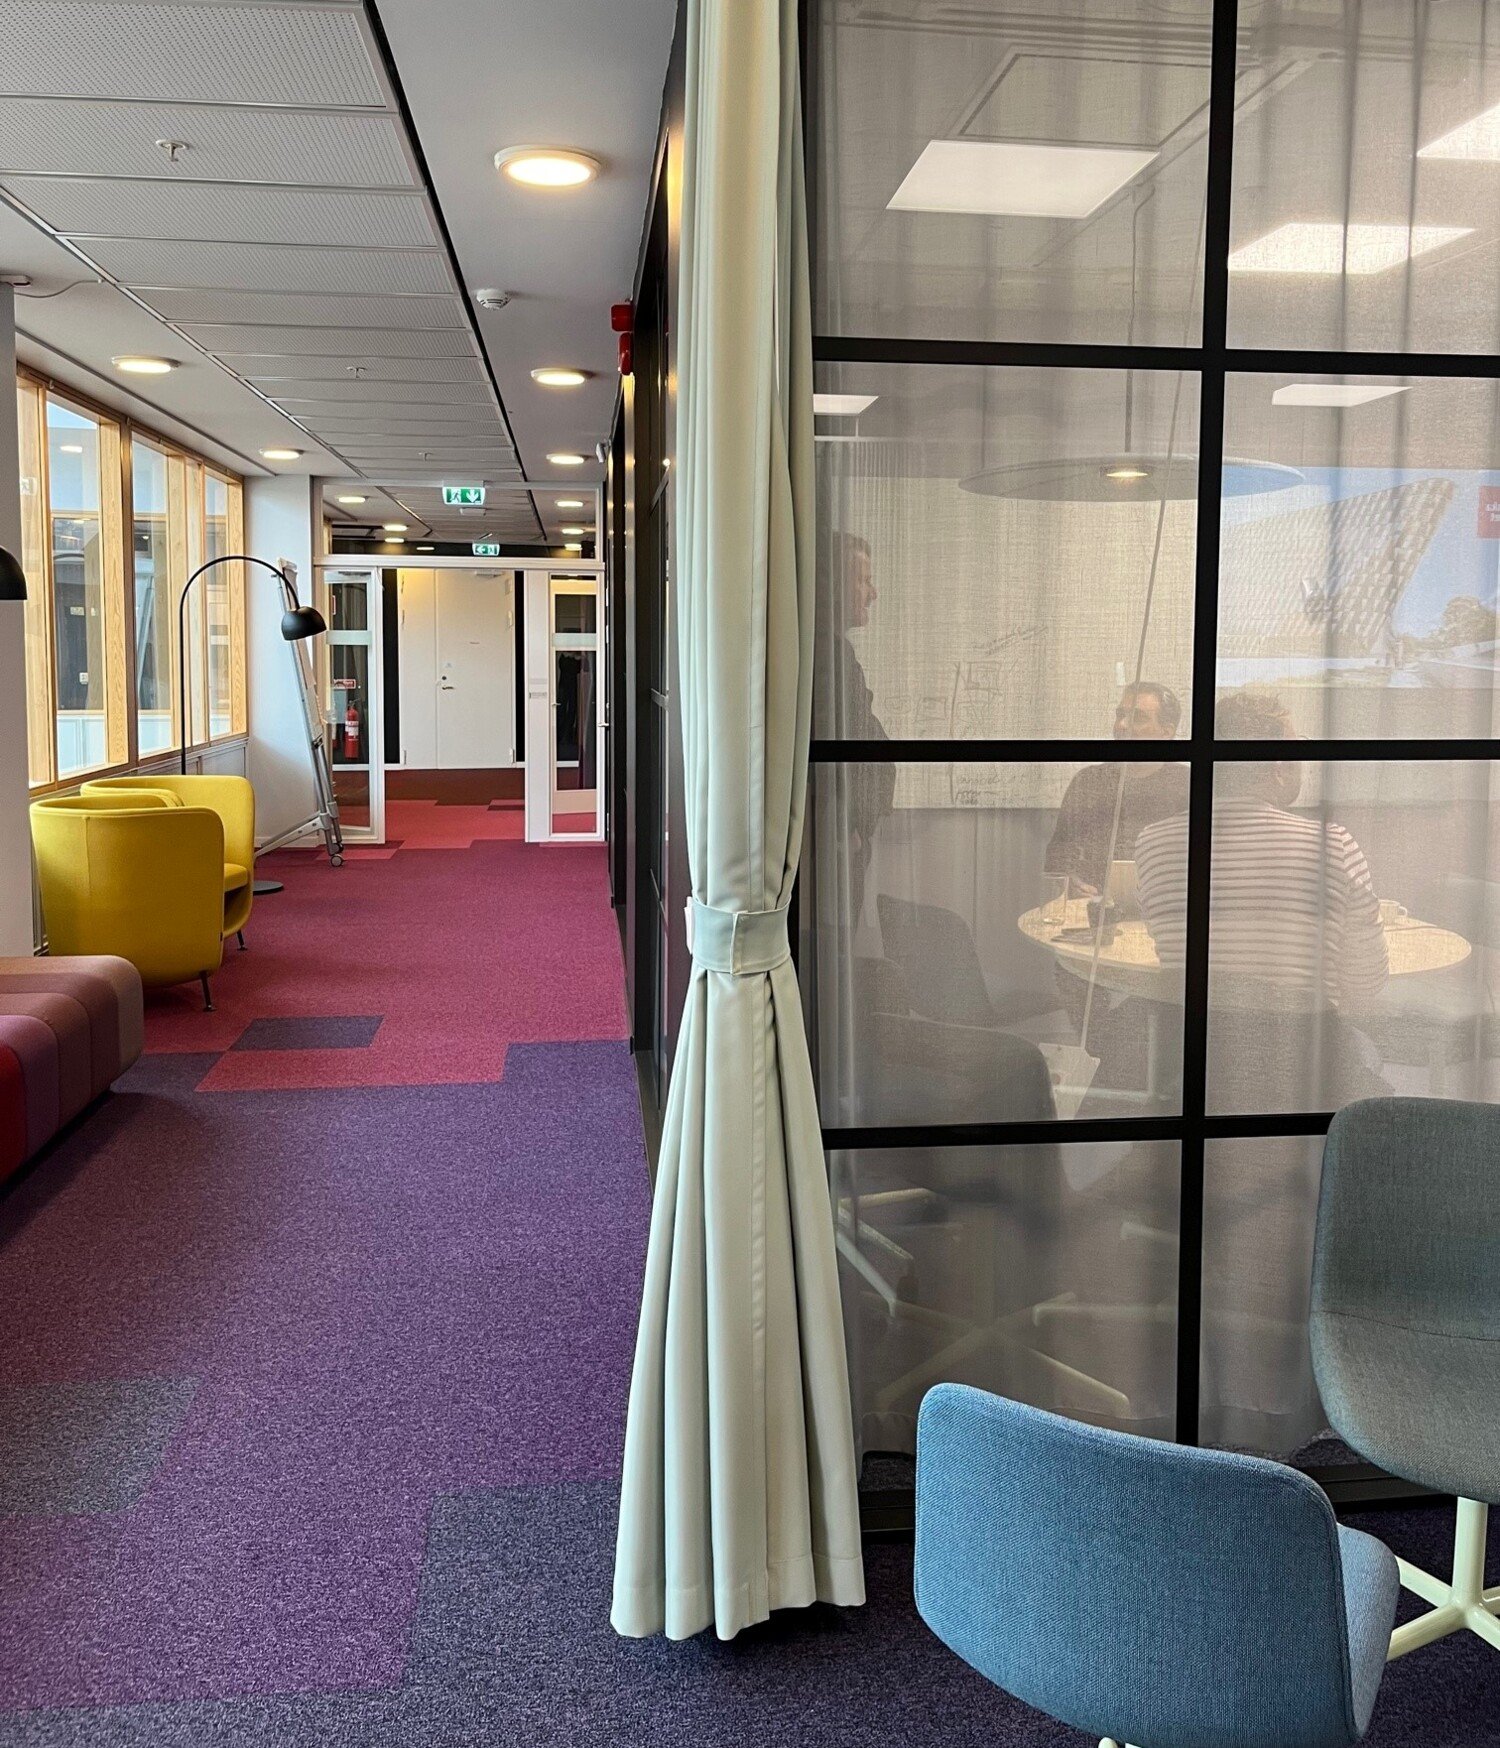 En korridor med fåtöljer och ett mötesrum med glasdörrar hos Enheten för Undervisning och lärande, ANA10.